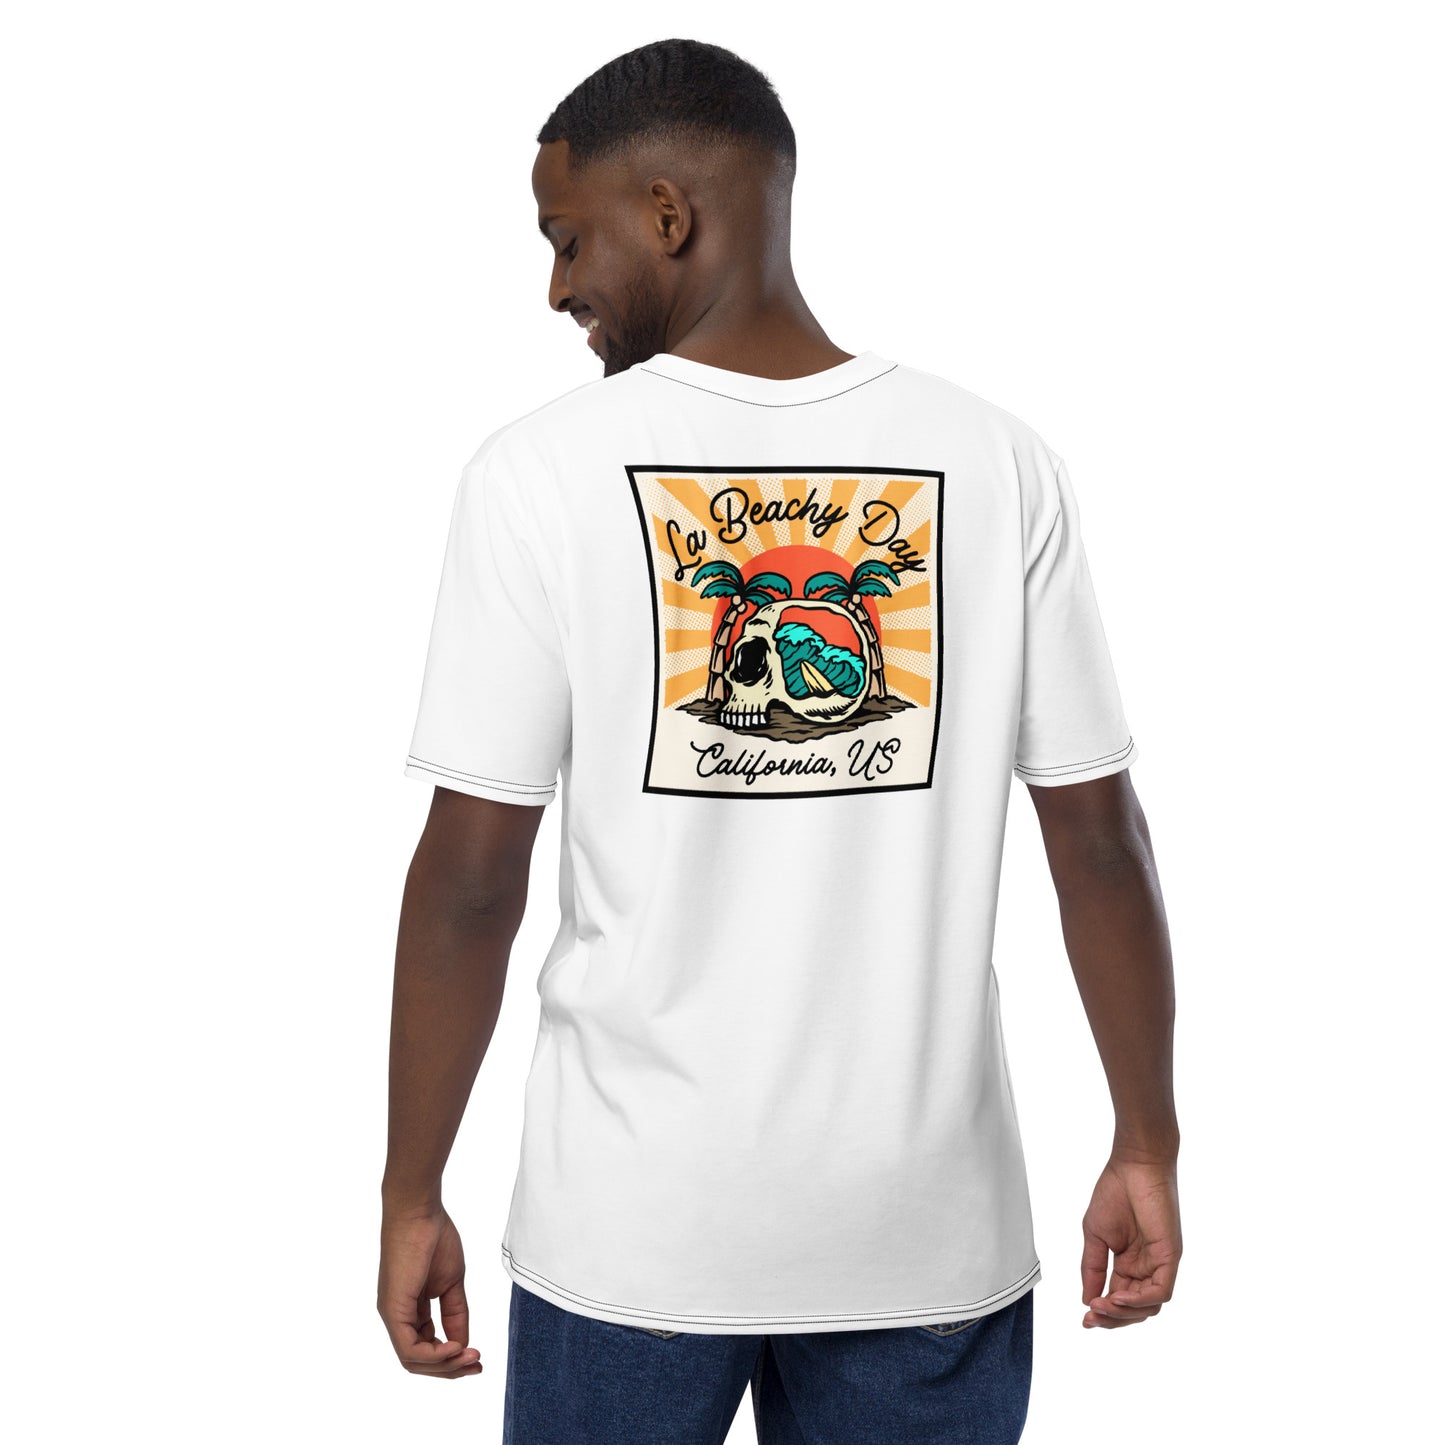 La Beachy Day Men's t-shirt